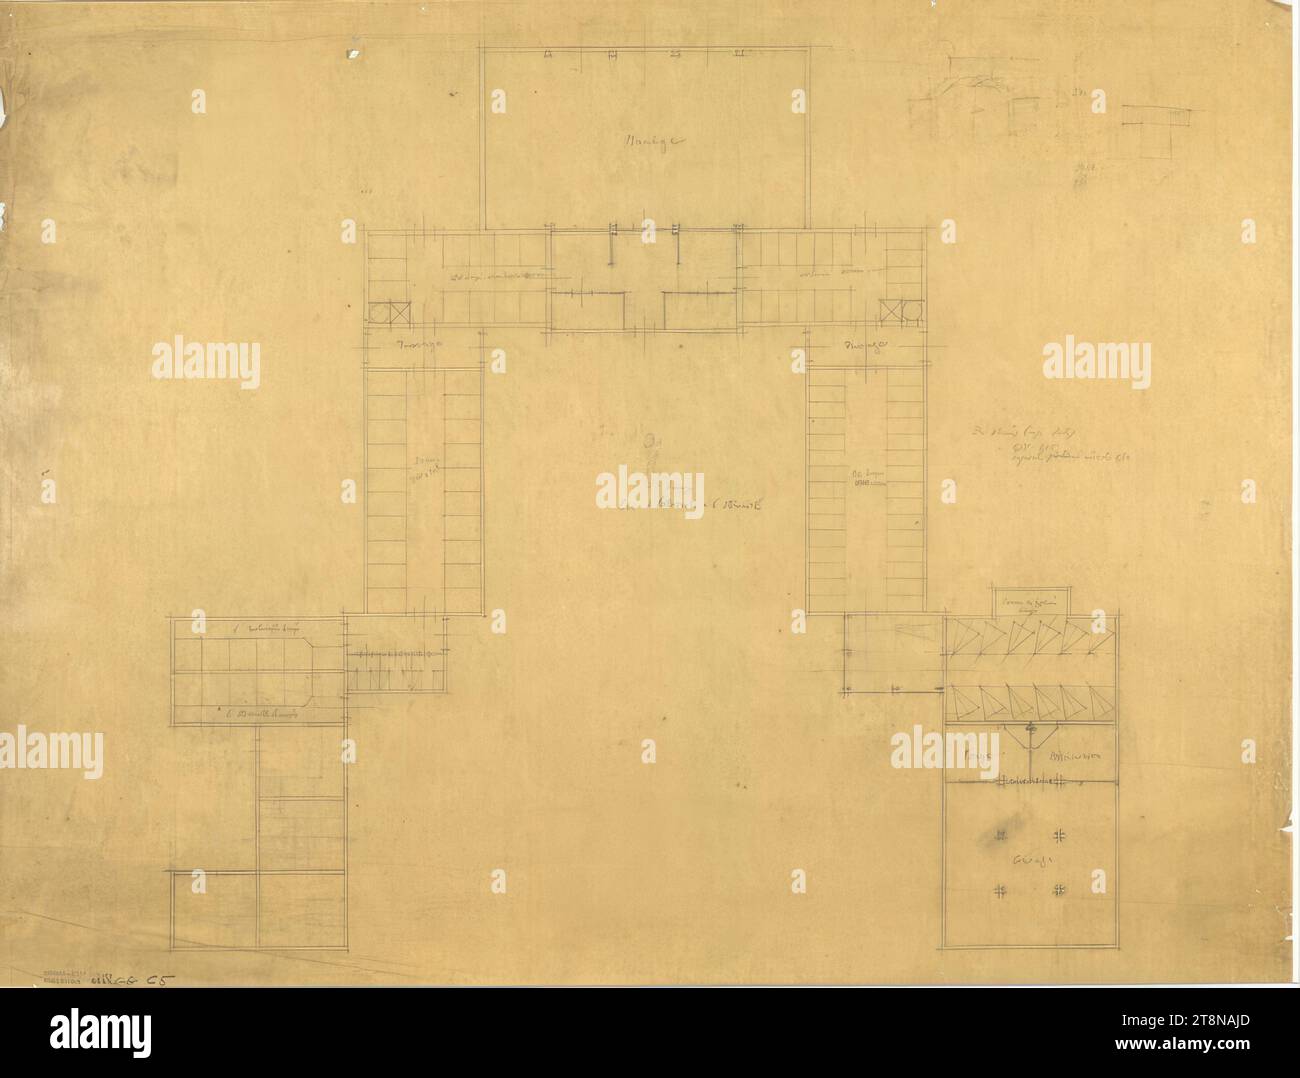 Écuries pour Prince Sanguszko, sud de la France, plan au sol, 1924, dessin architectural, papier calque ; crayon, 500x653mm Banque D'Images